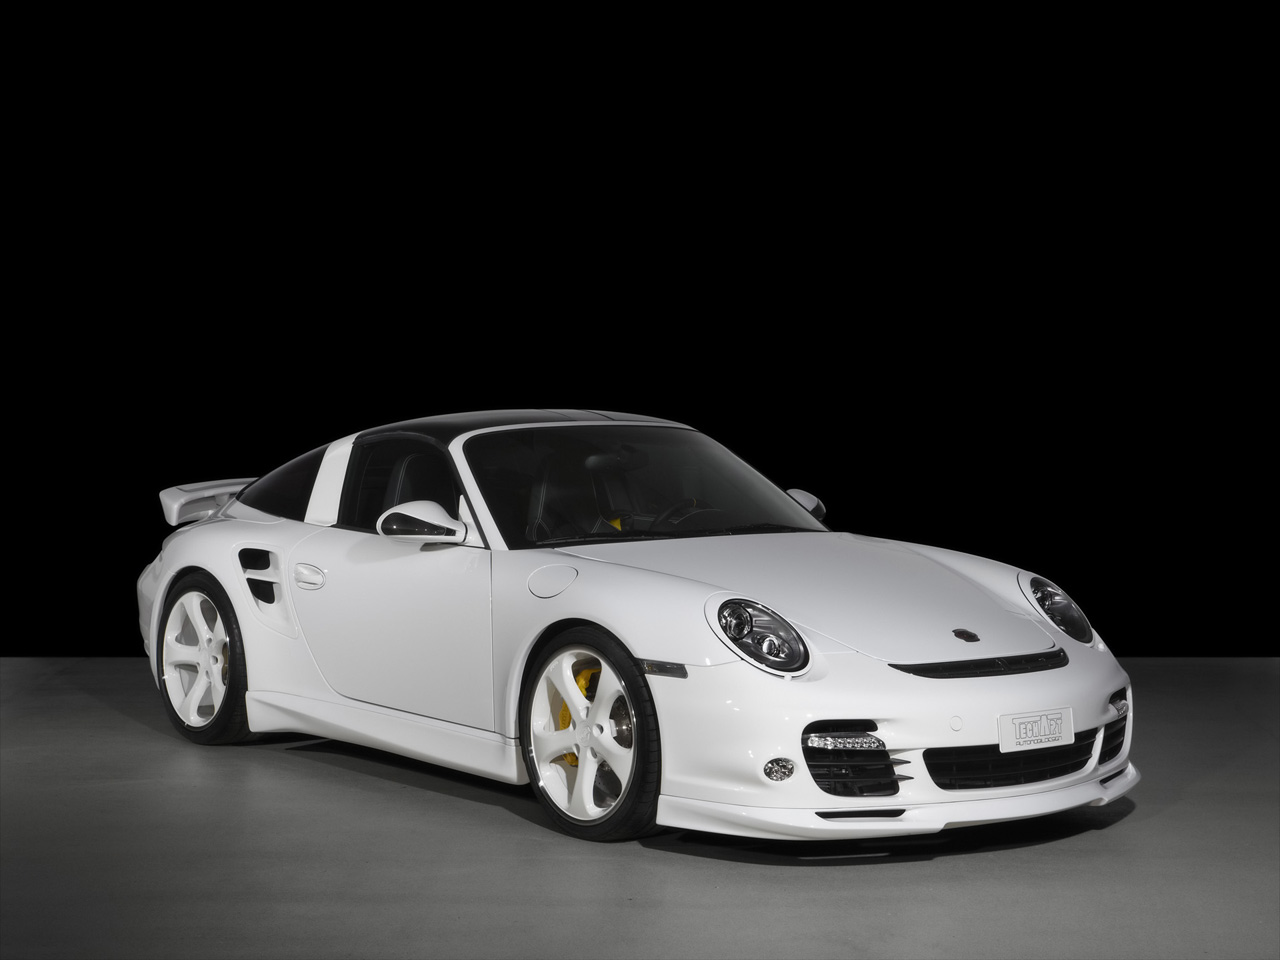 2010 TechArt GT Street R Porsche 911 Turbo